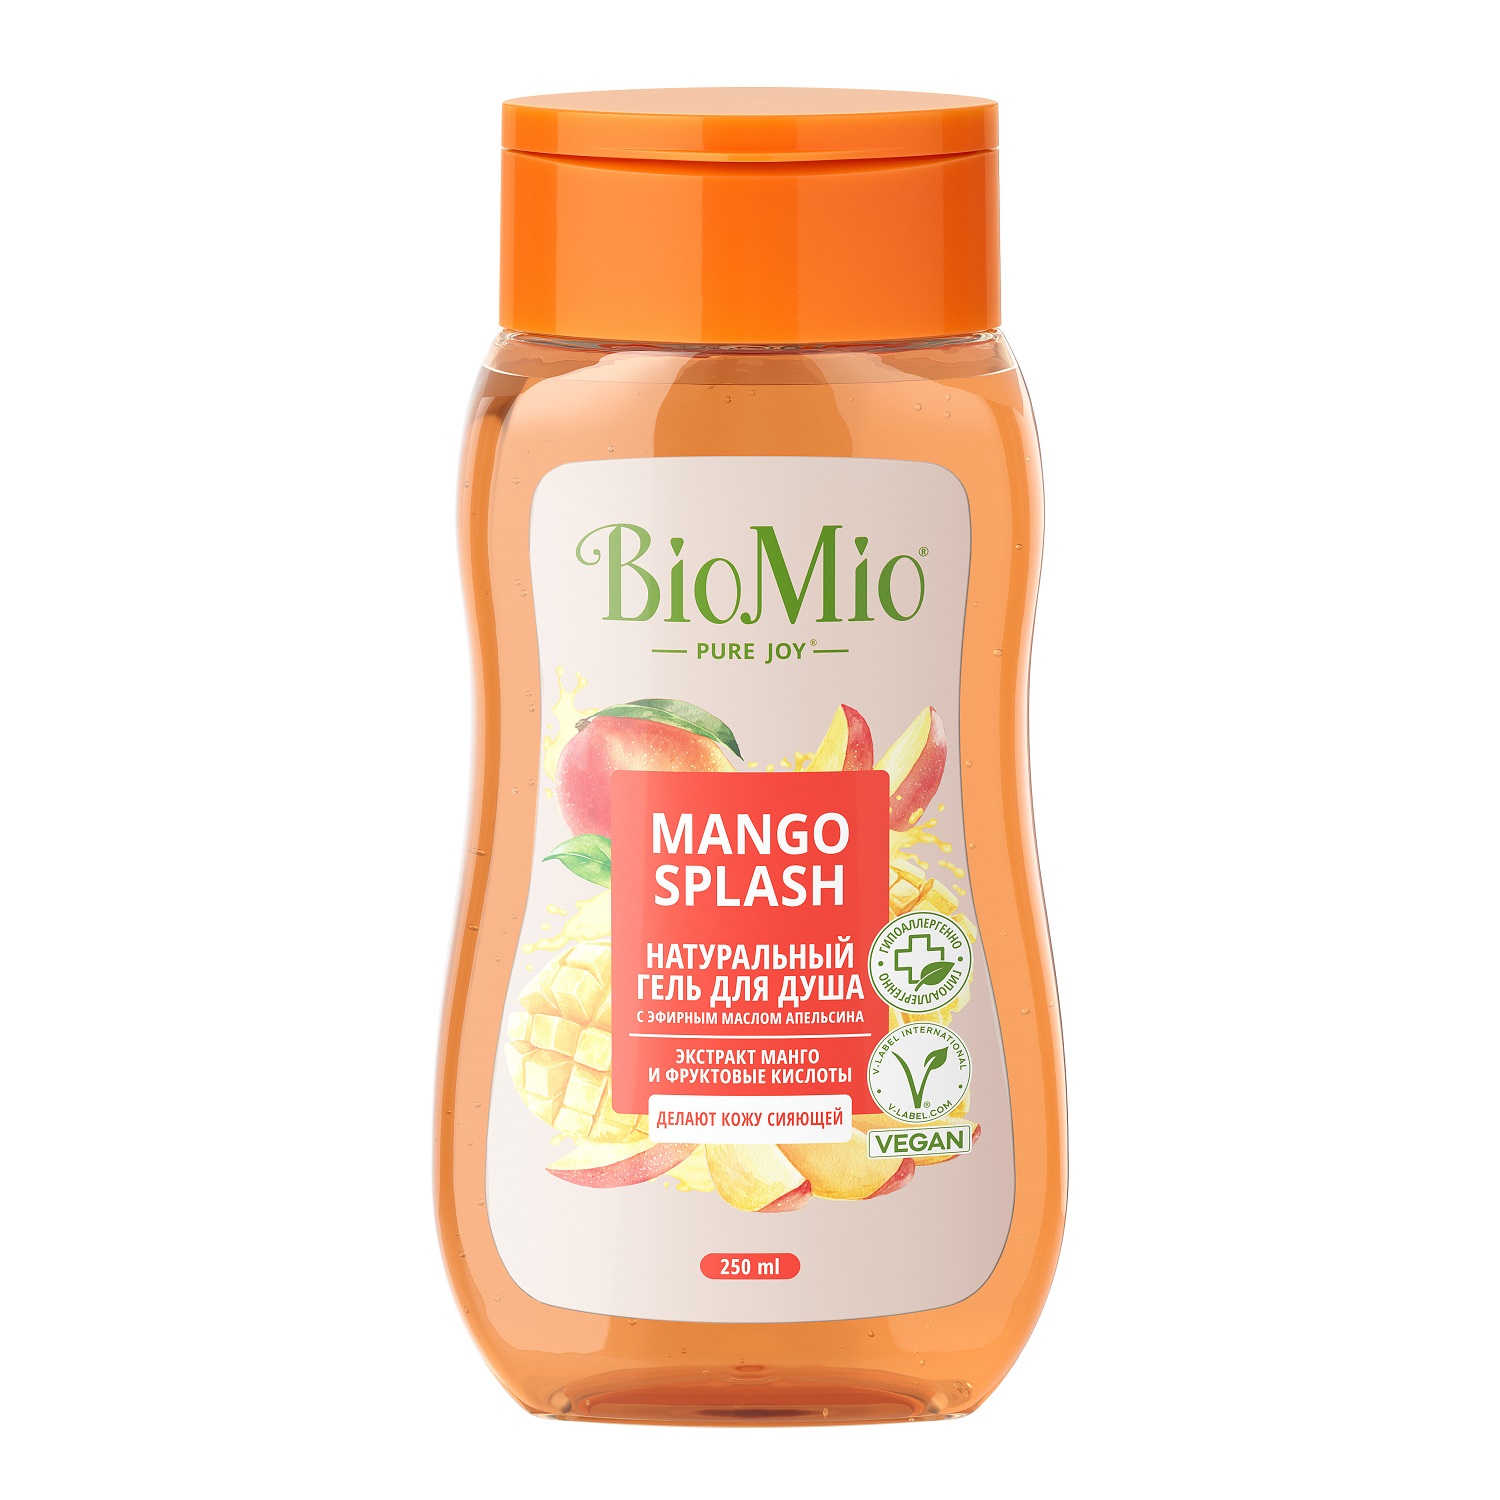 BioMio Гель для душа с экстрактом манго Mango Splash, 250 мл (BioMio, Для ванны и душа) гель для душа dr seed гель для душа с ароматом спелого манго moisture bodywash mango sunset